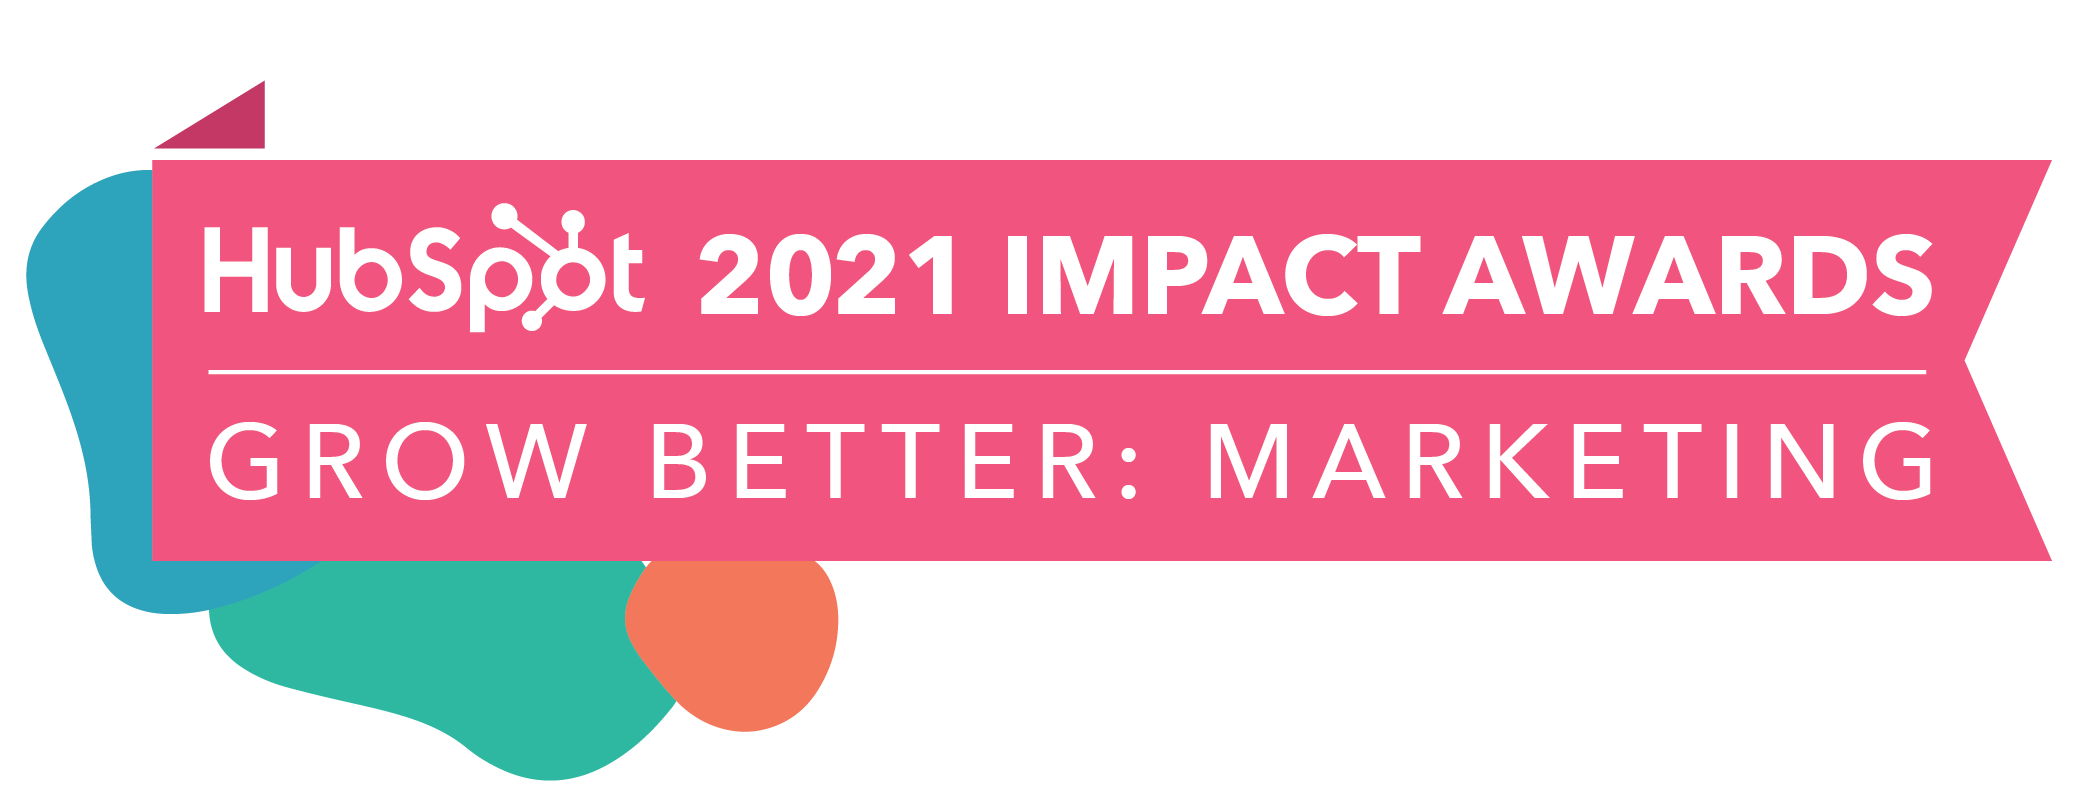 HubSpot_ImpactAwards_2021_GBMarketing3